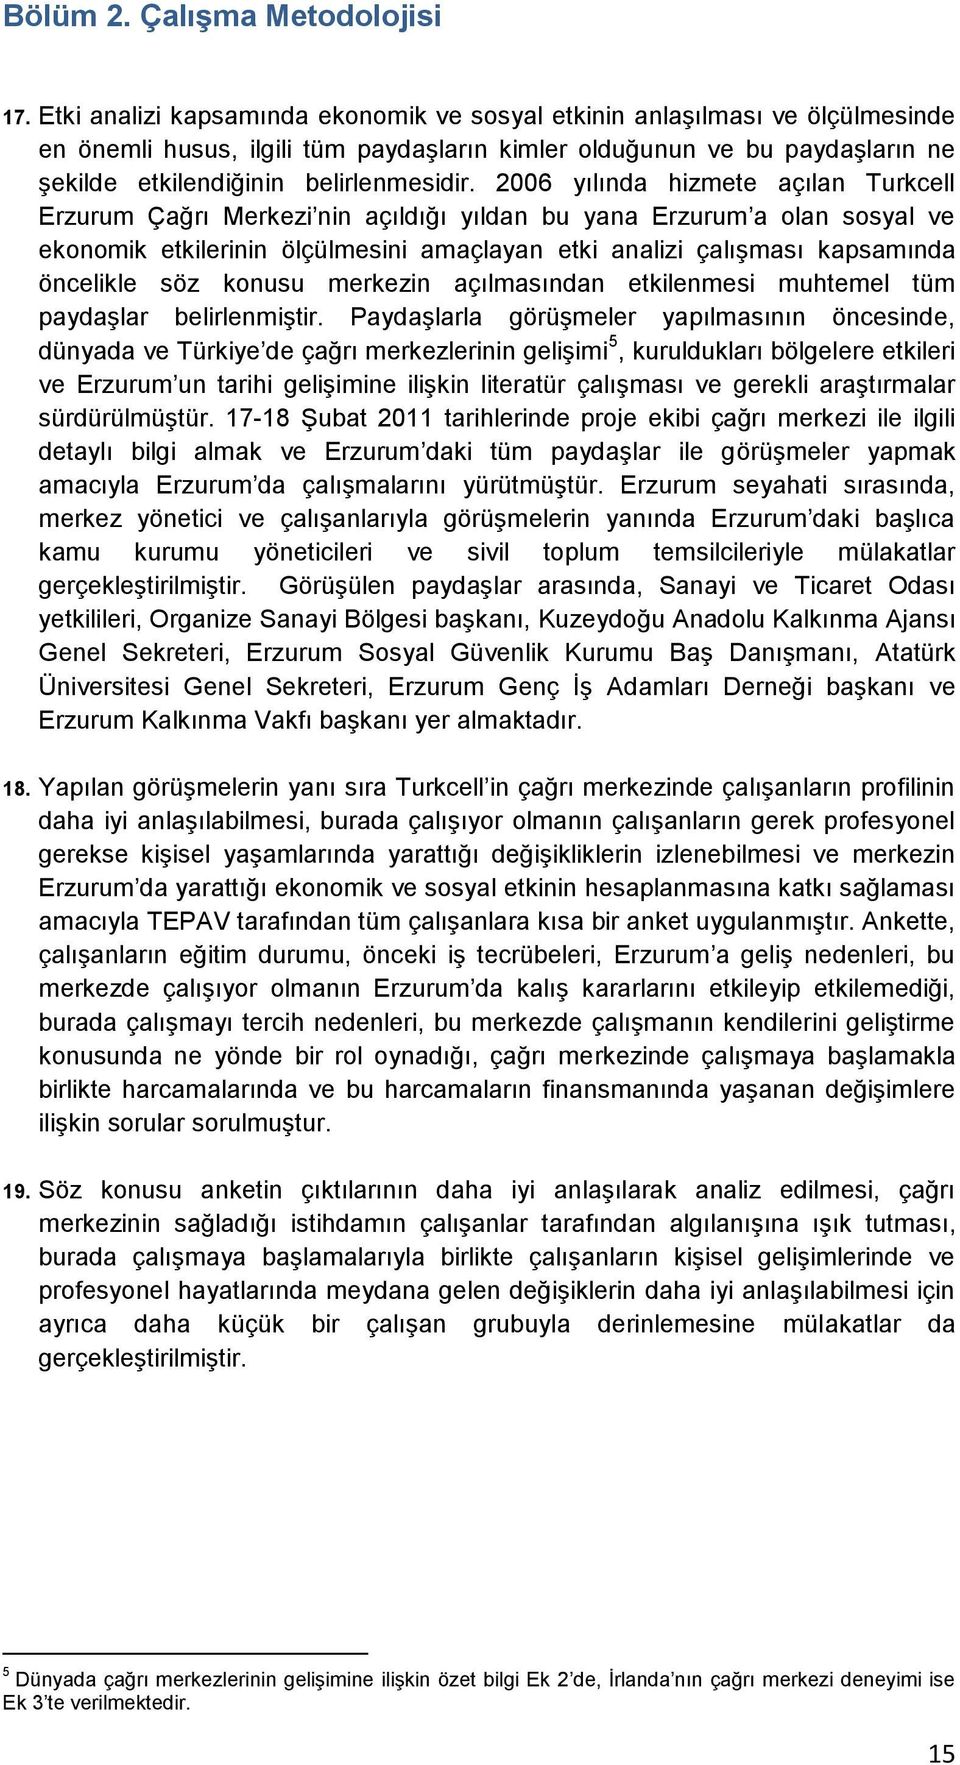 2006 yılında hizmete açılan Turkcell Erzurum Çağrı Merkezi nin açıldığı yıldan bu yana Erzurum a olan sosyal ve ekonomik etkilerinin ölçülmesini amaçlayan etki analizi çalışması kapsamında öncelikle